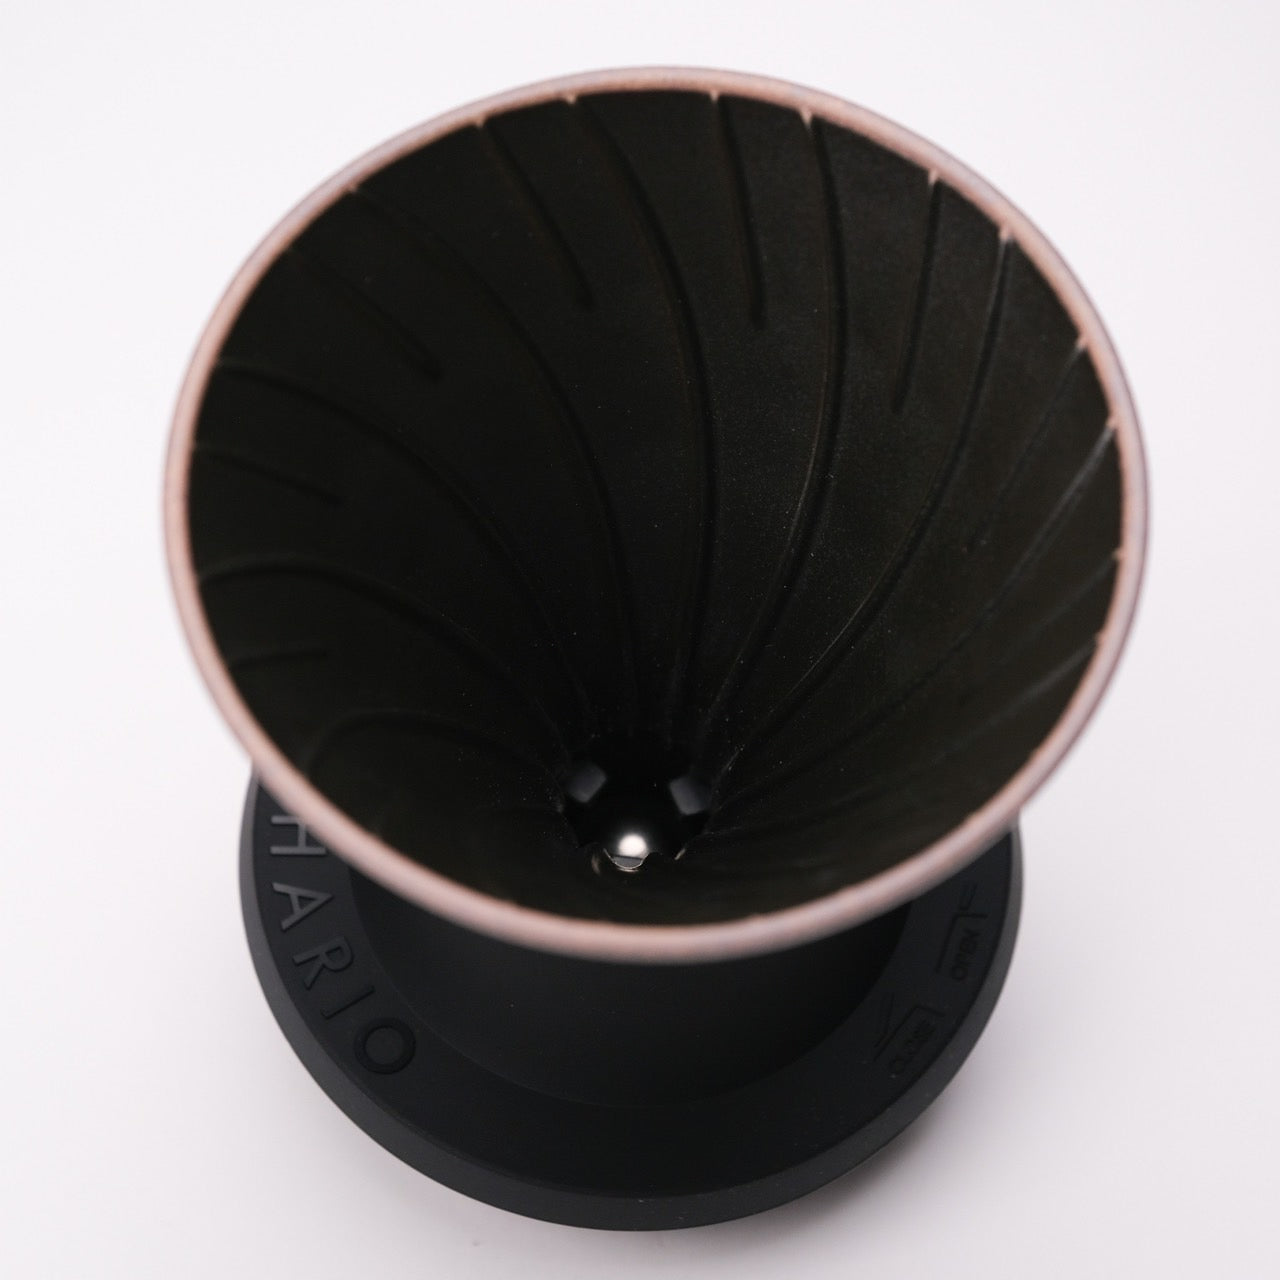 HARIO x Lin's Ceramics Studio Swtich Immersion Coffee Dripper Volcano Black 2